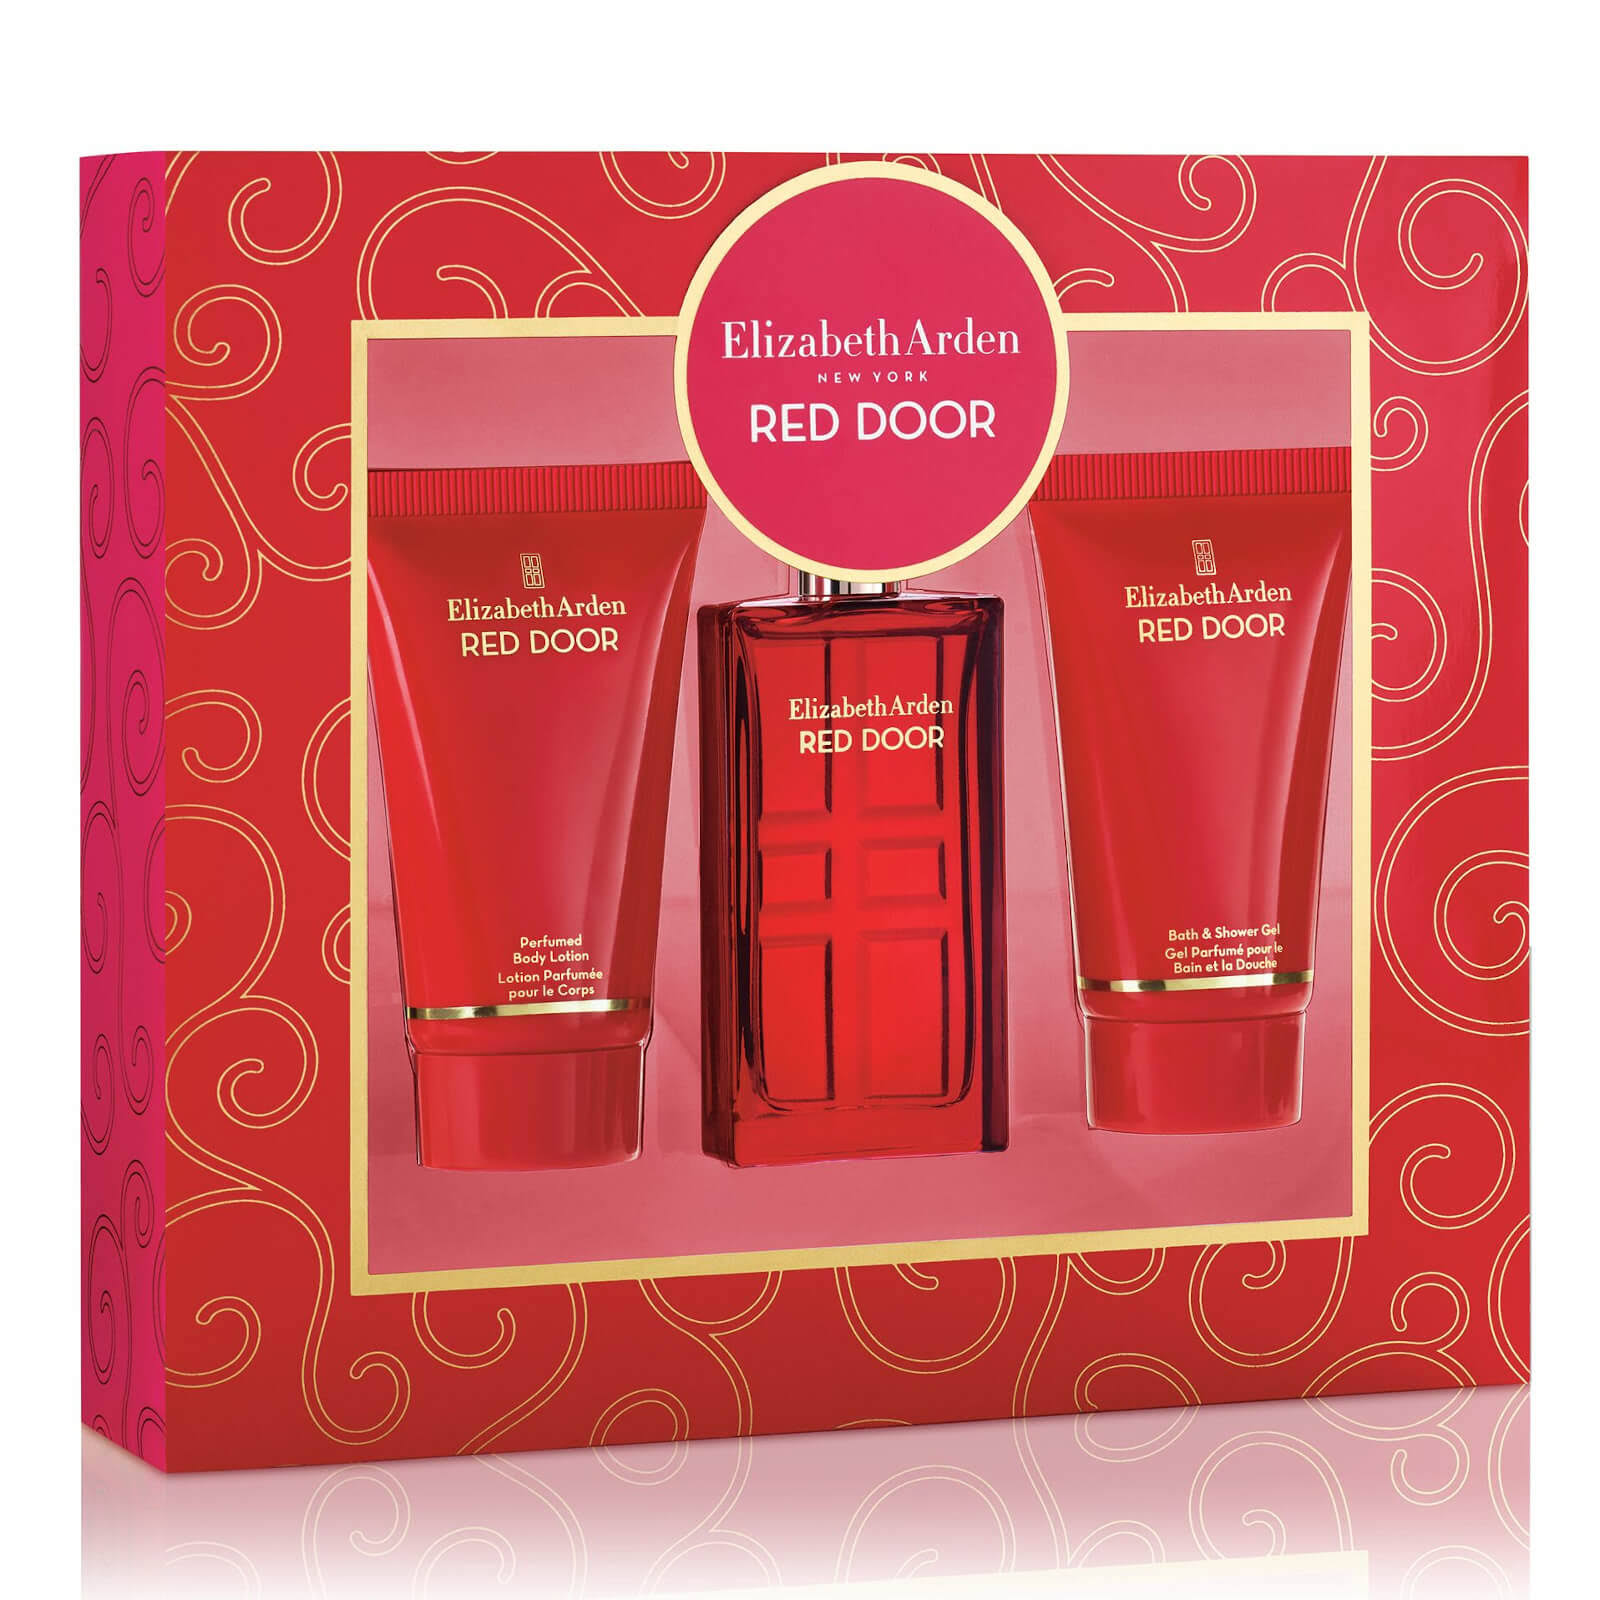 Elizabeth Arden Red Door Fragrance, Body Lotion and Shower Gel Gift Set